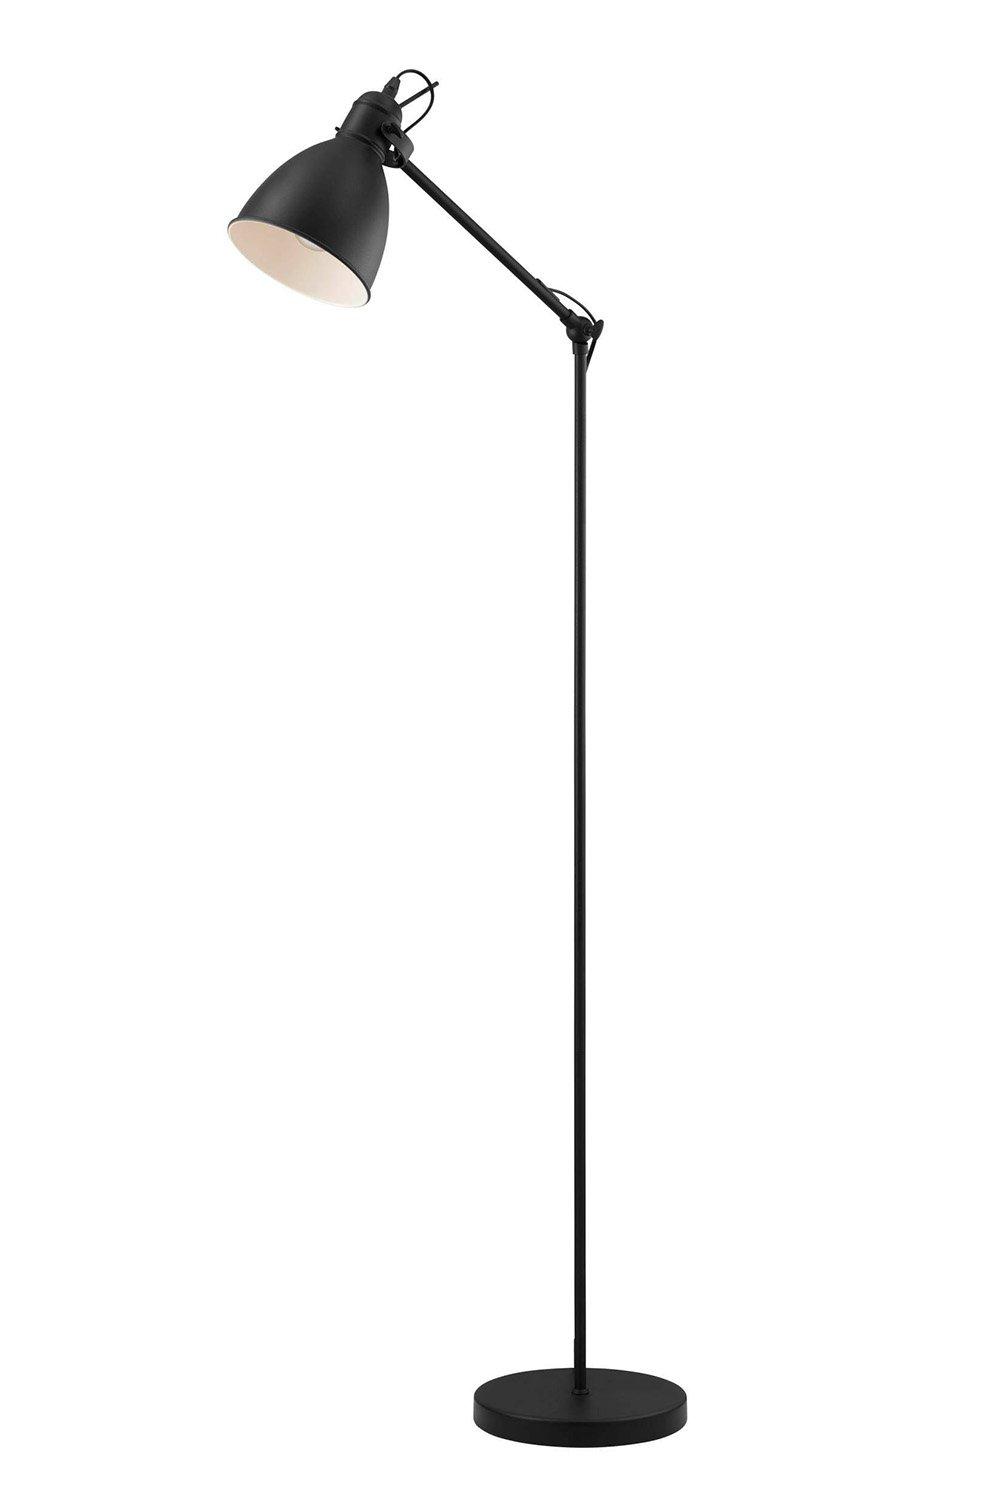 Priddy Steel Black Adjustable Floor Lamp